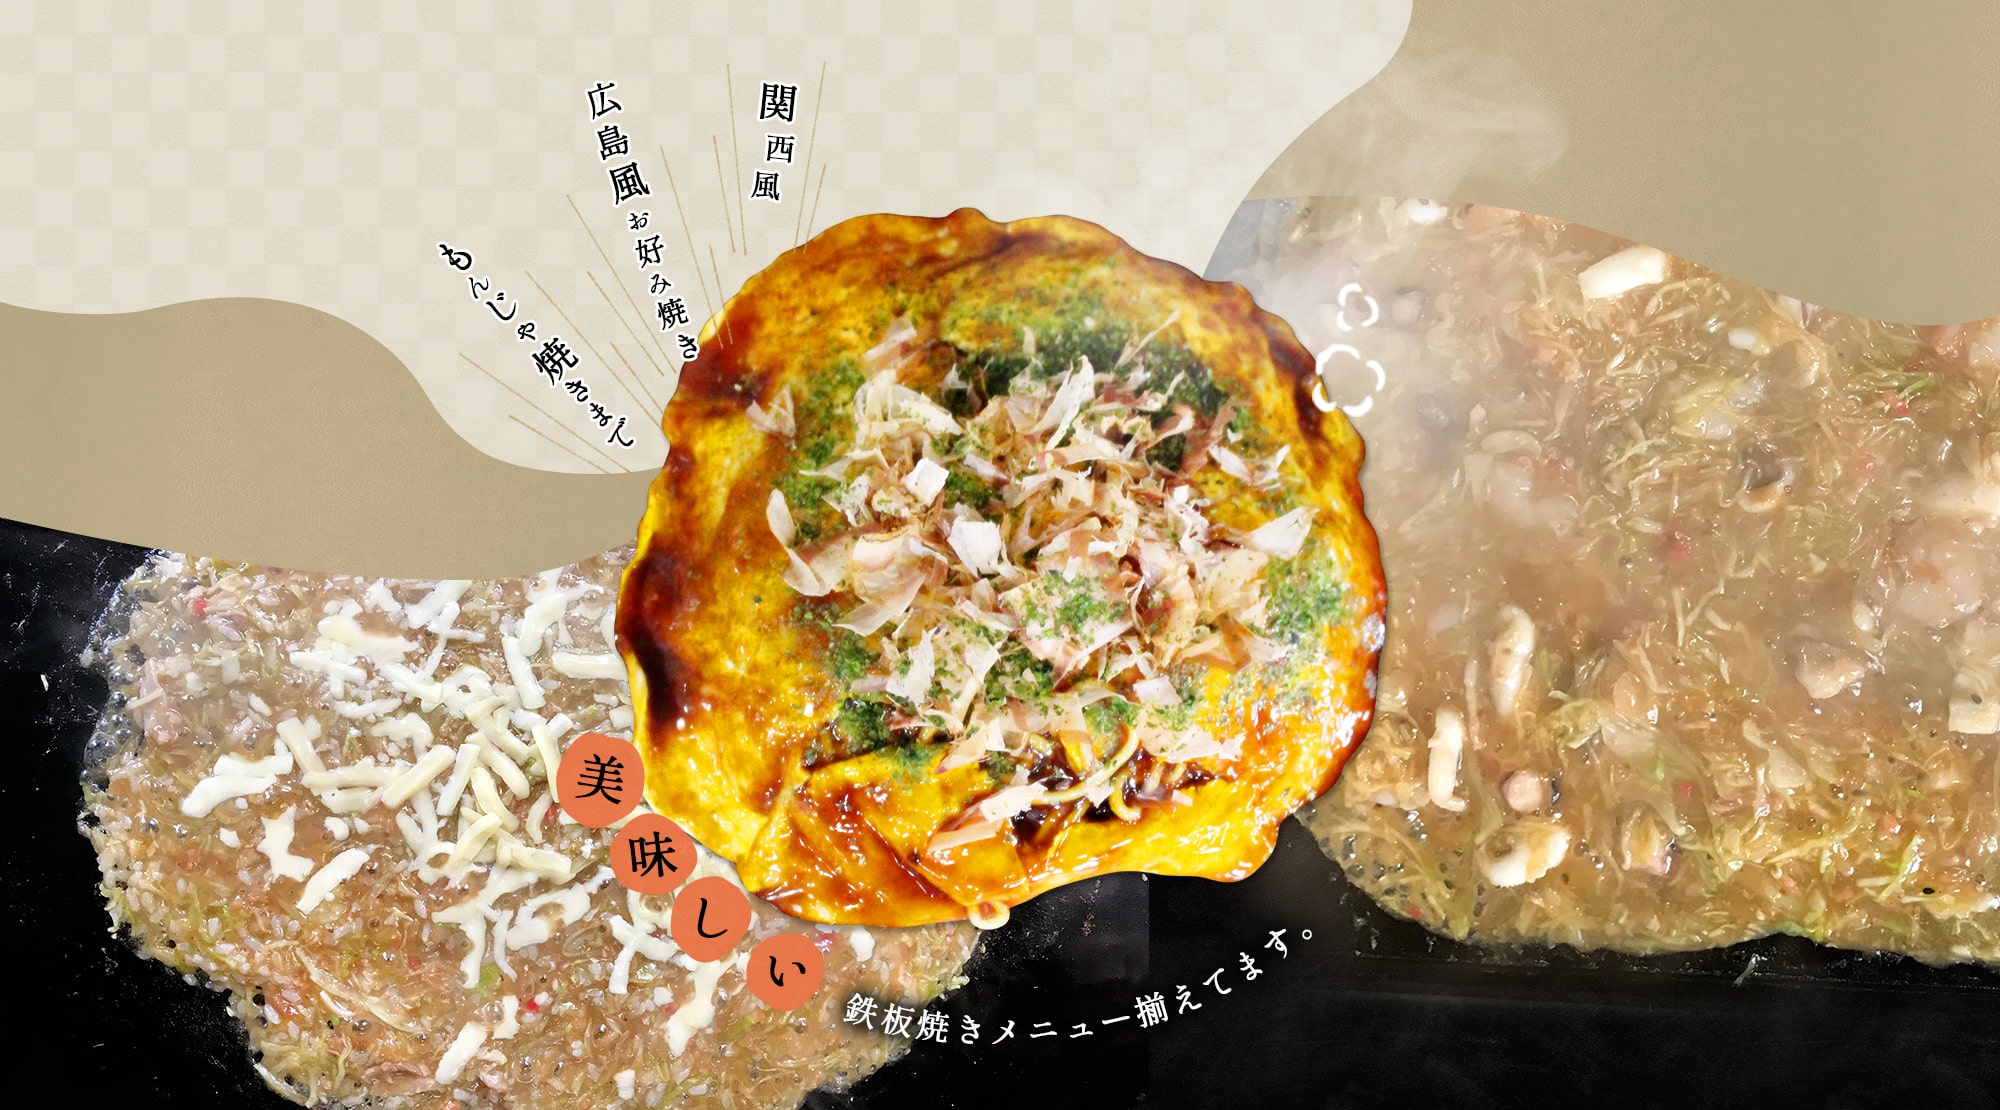 関西風 広島風お好み焼き もんじゃ焼きまで 美味しい鉄板焼きメニュー揃えてます。